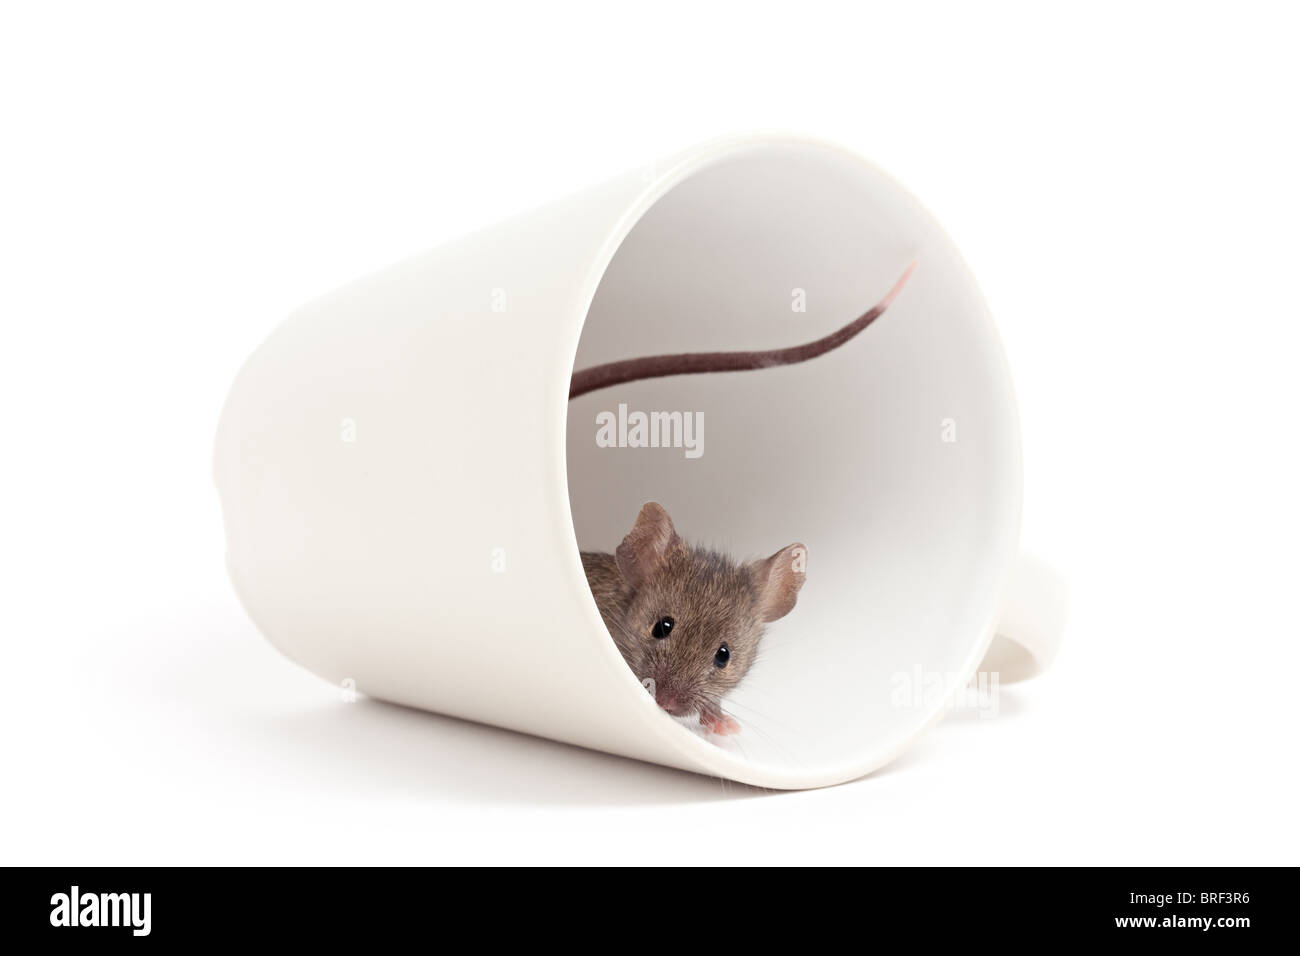 Curieusement la souris de pics dans une tasse à café - isolated on white Banque D'Images